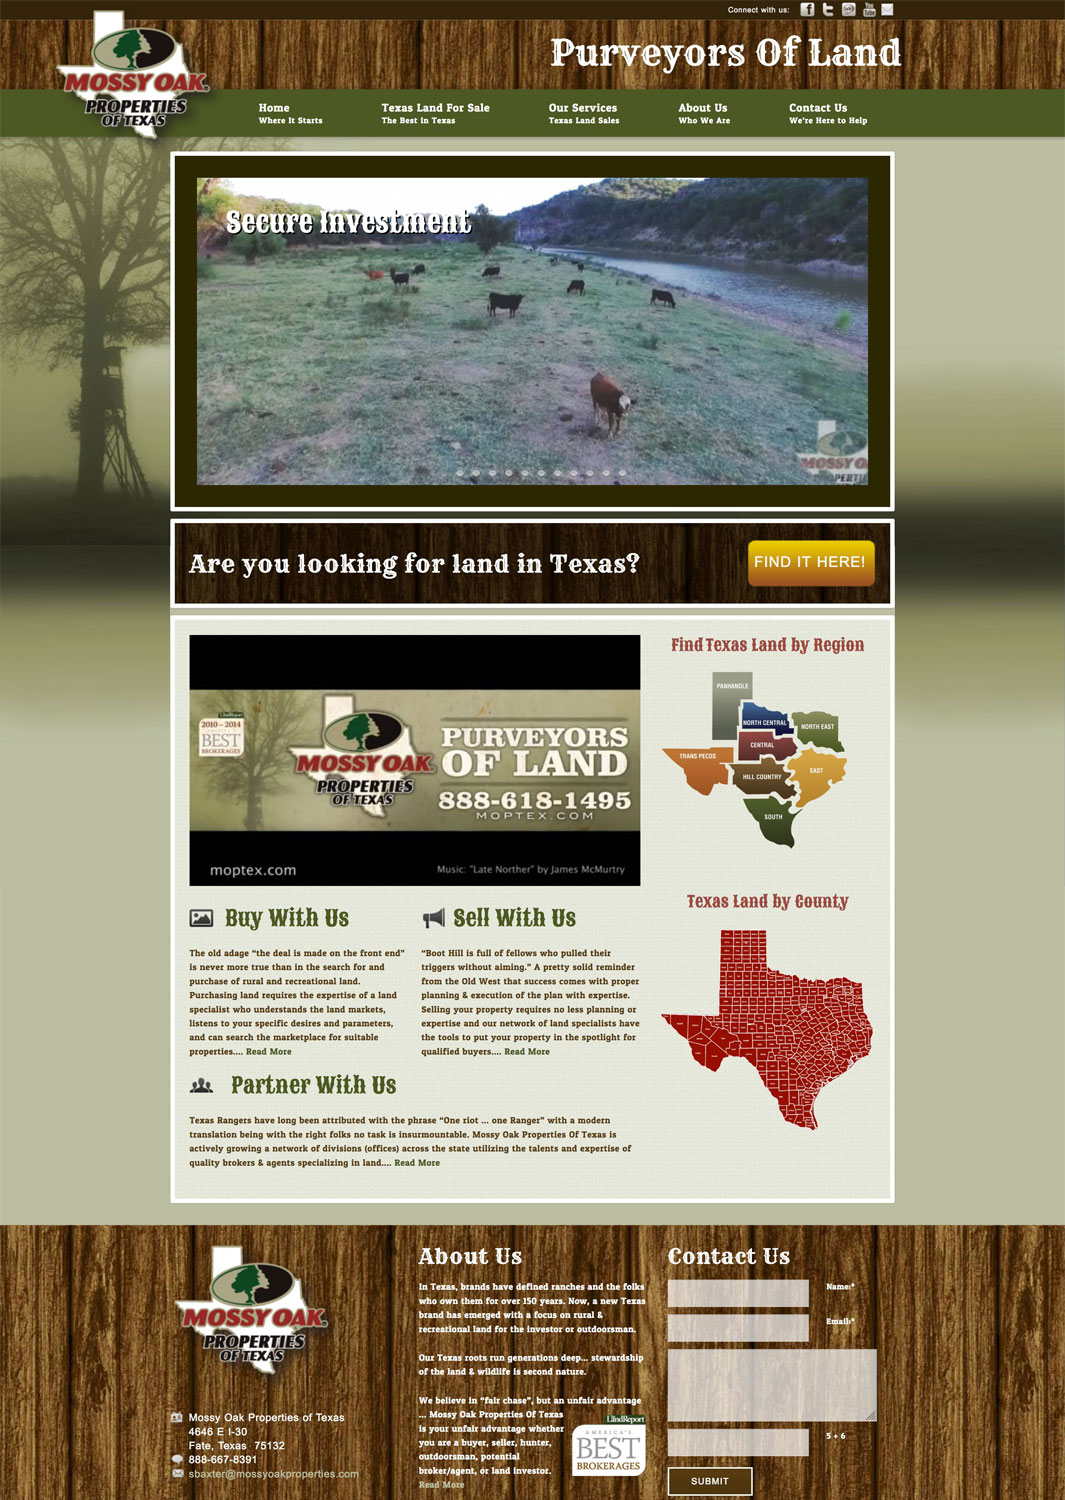 Mossy Oak Properties of Texas